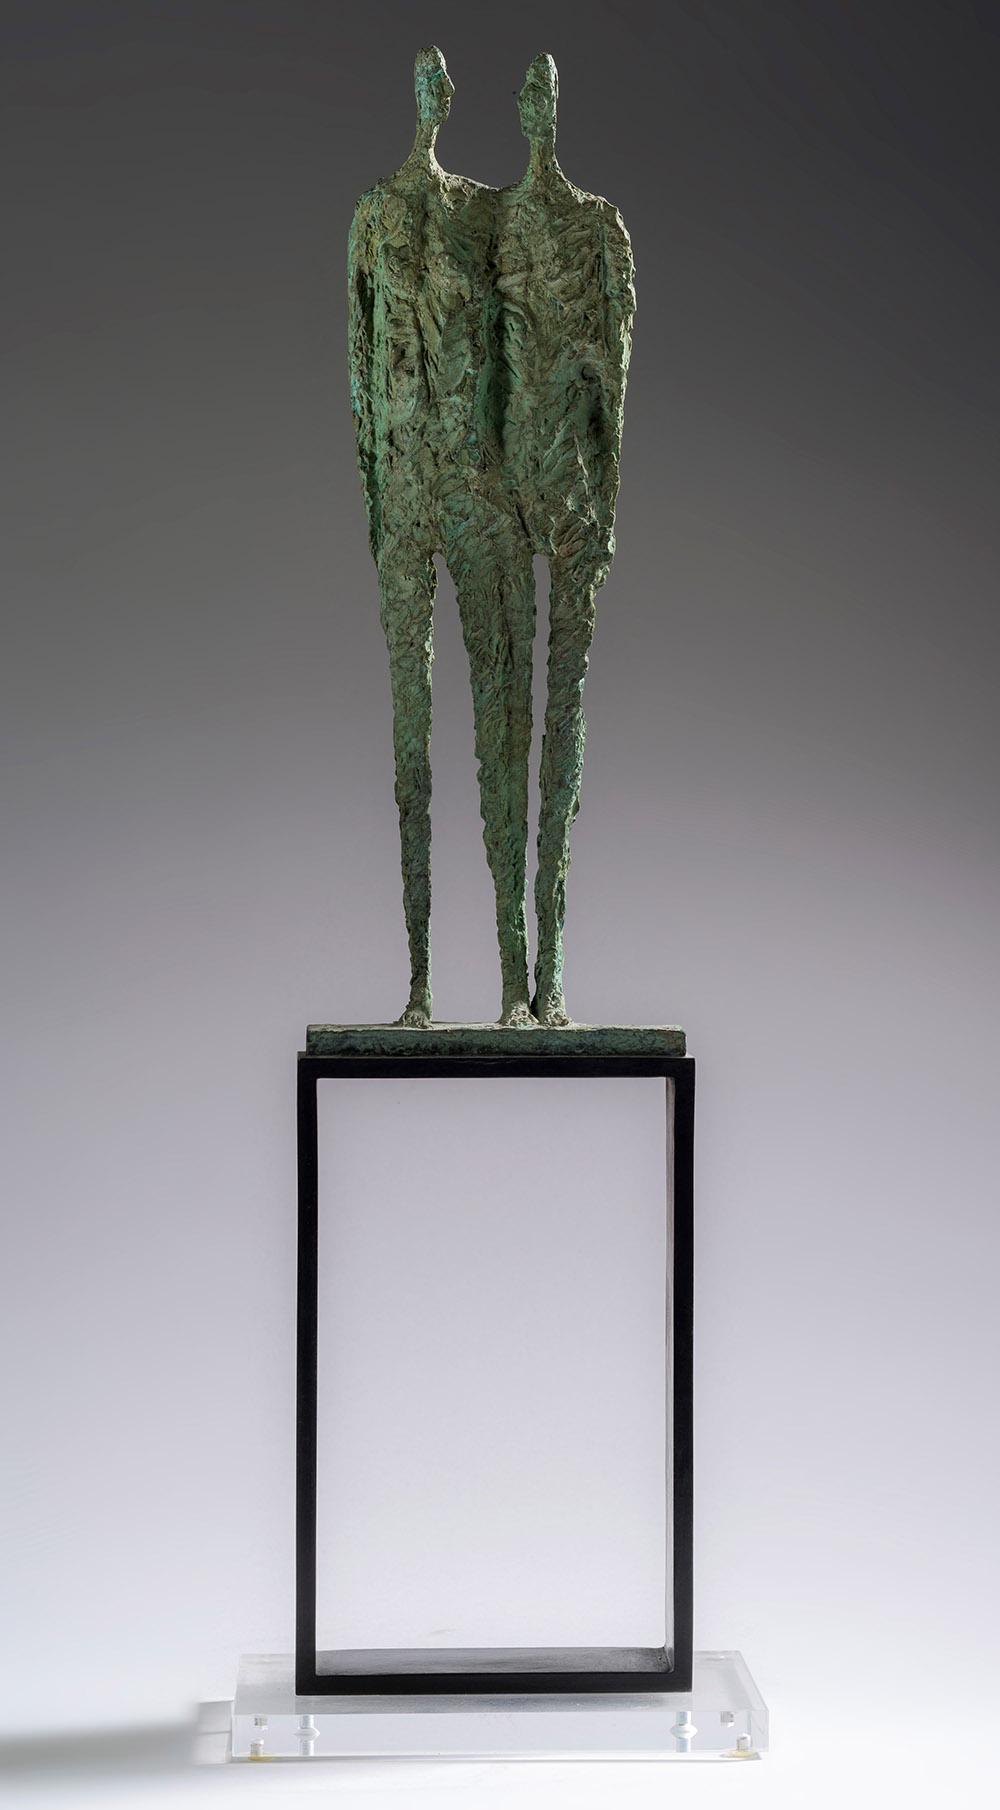 Thme est une sculpture en bronze de la sculptrice Martine Demal, dont les dimensions sont de 49 x 15 x 11,5 cm (19,3 × 5,9 × 4,5 in). La sculpture est vendue avec un socle en plexiglas dont les dimensions sont de 15 x 11,5 x 1 cm (5,9 x 4,3 x 0,4